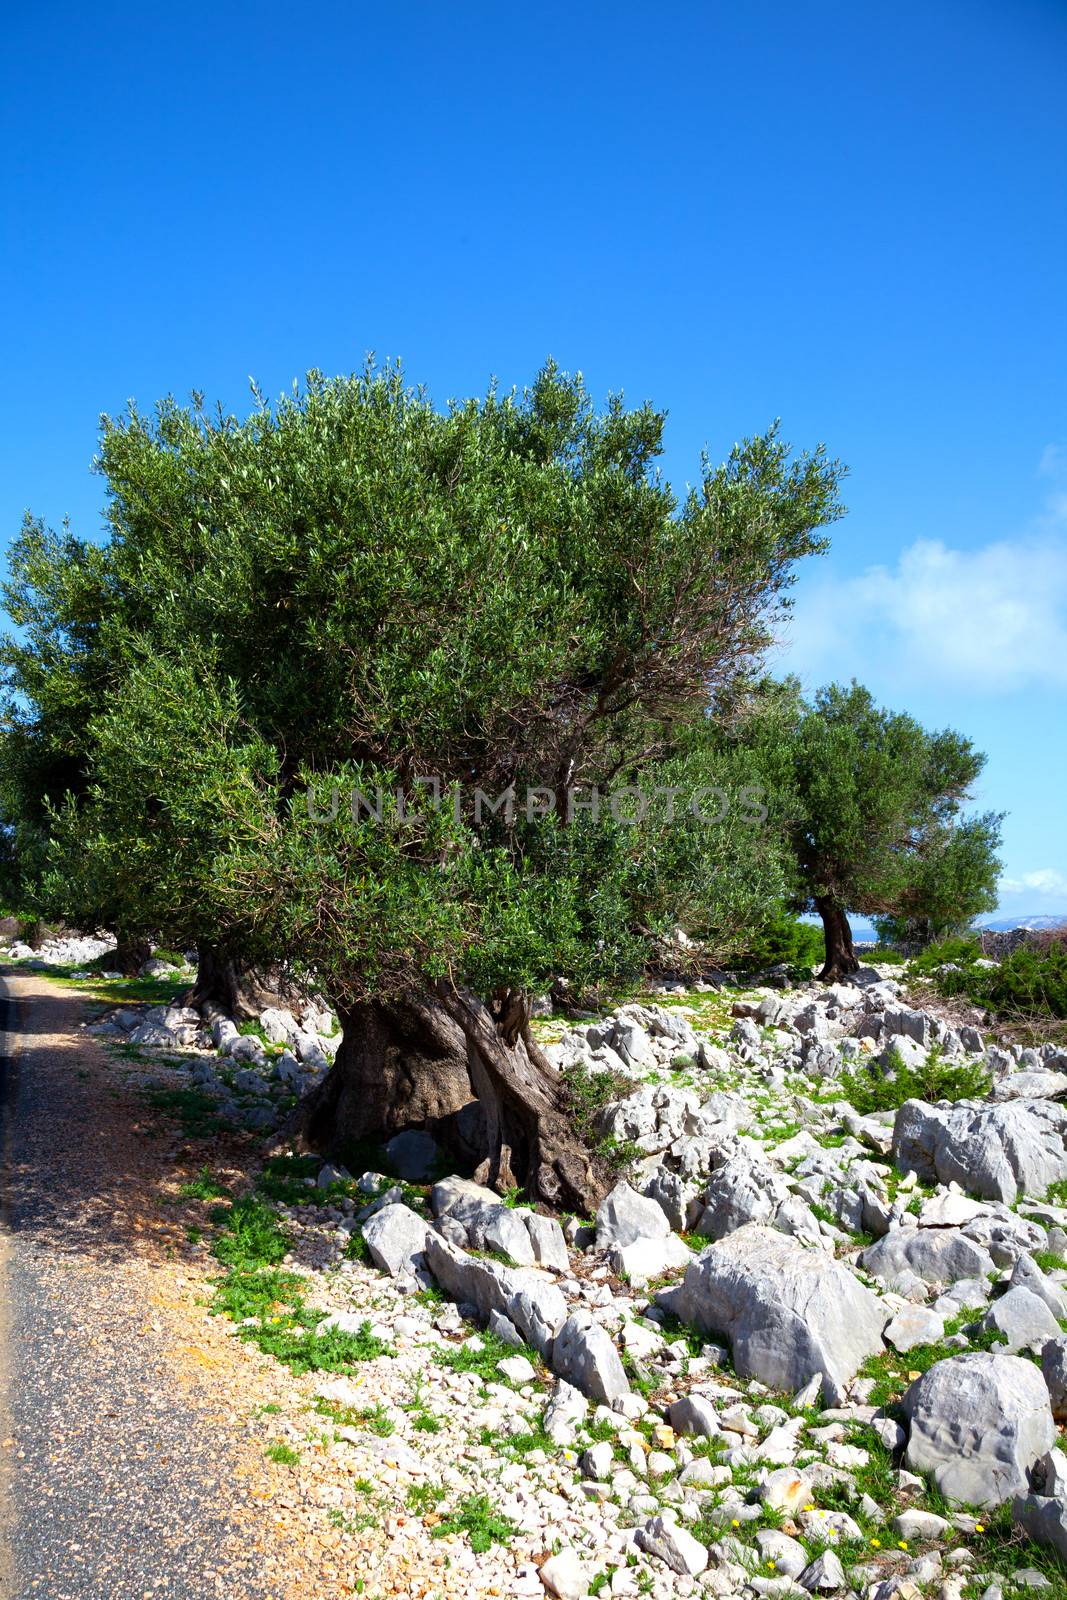 olive trees in dalmatia, Croatia. by motorolka